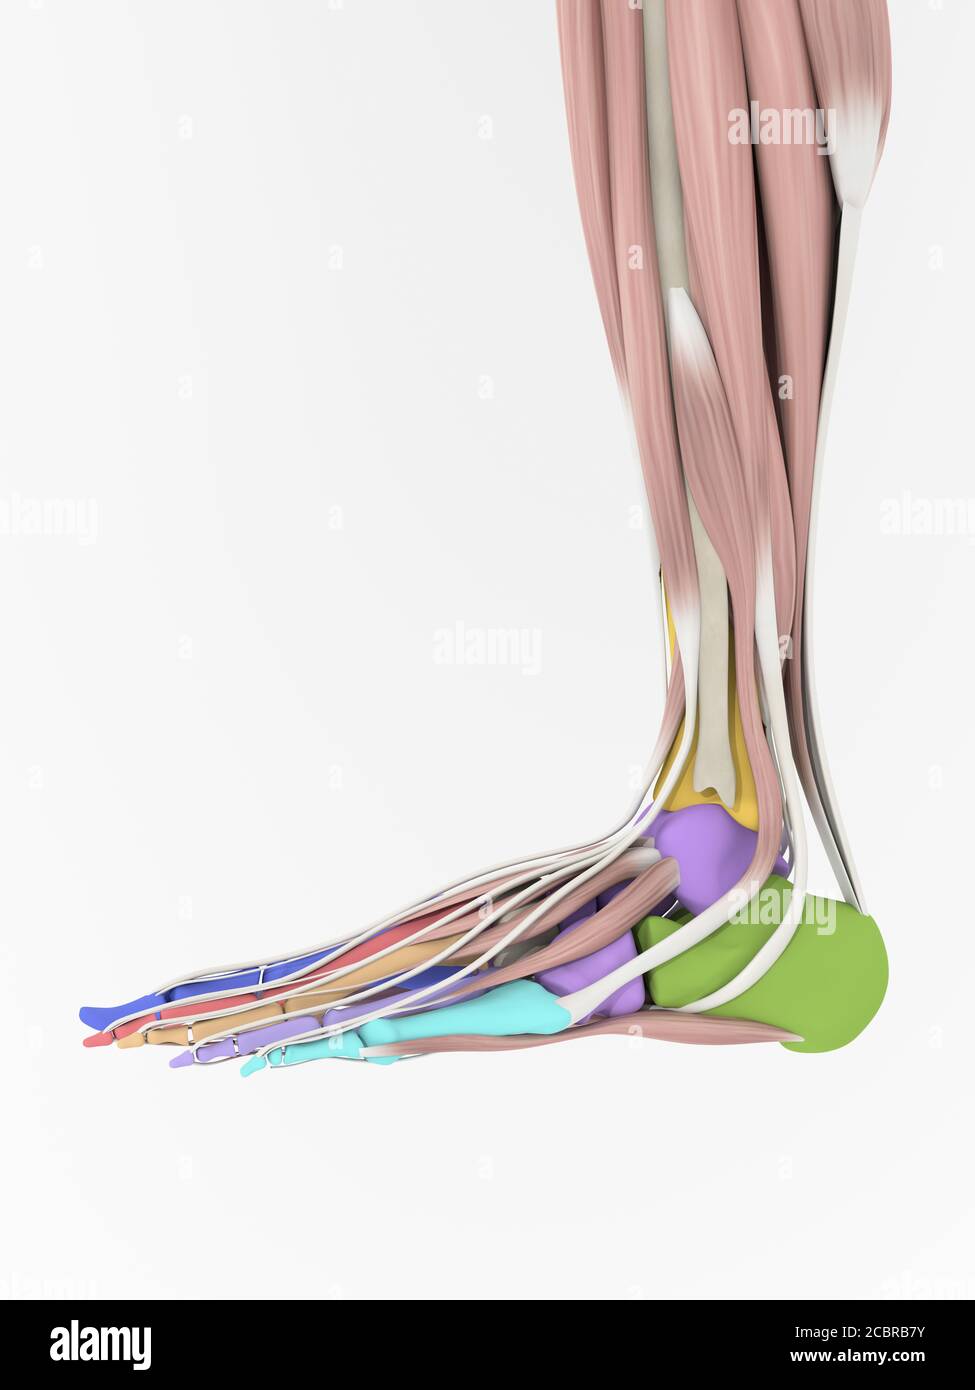 Anatomy illustration of human foot  3D Illustration. Stock Photo